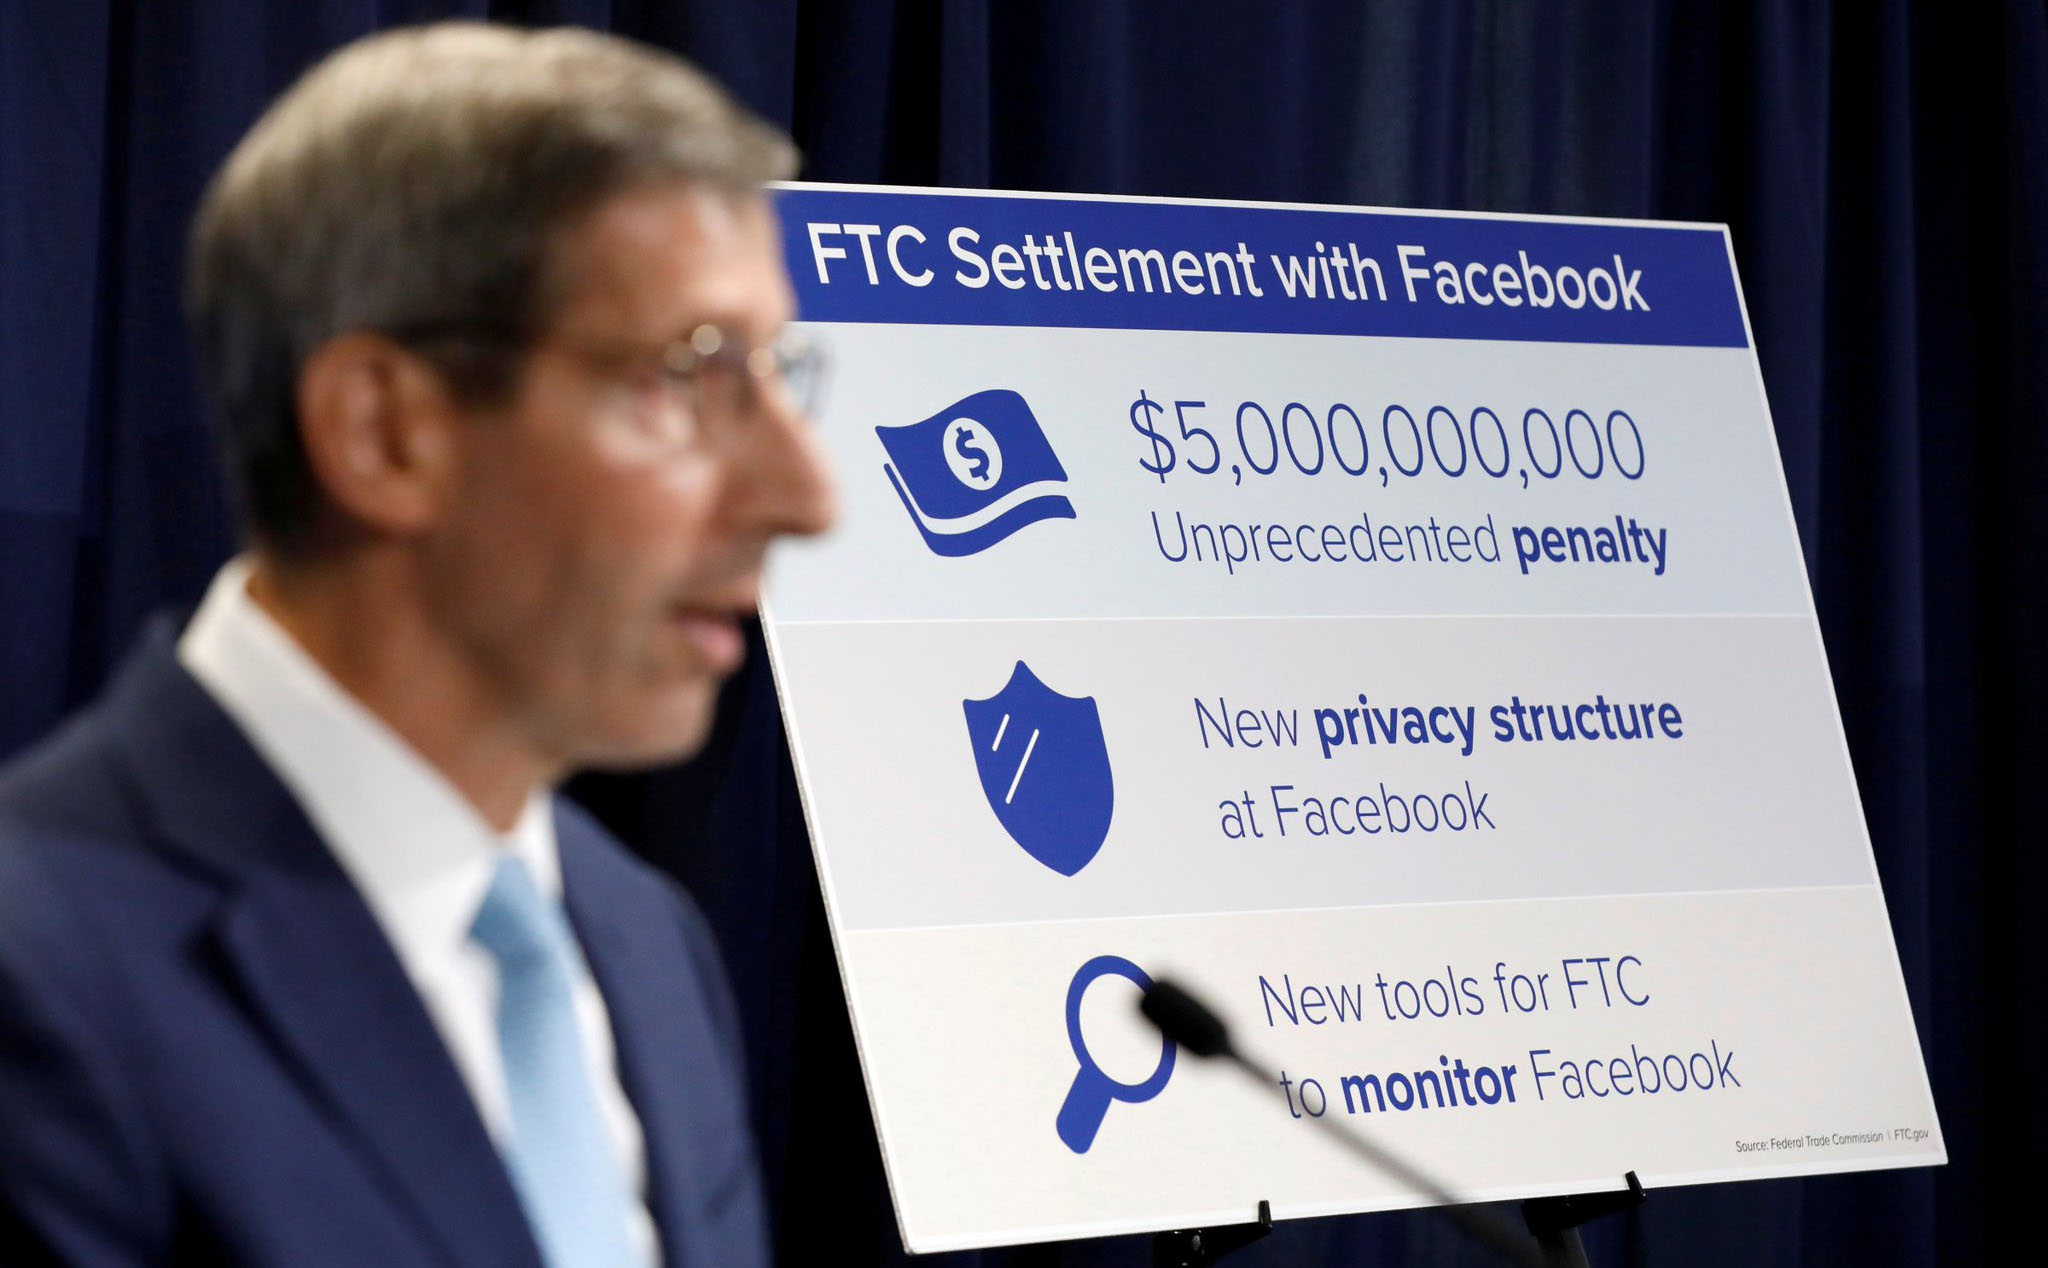 Facebook chấp nhận đóng phạt 5 tỉ USD và bị buộc phải tuân thủ chính sách bảo mật dữ liệu riêng tư